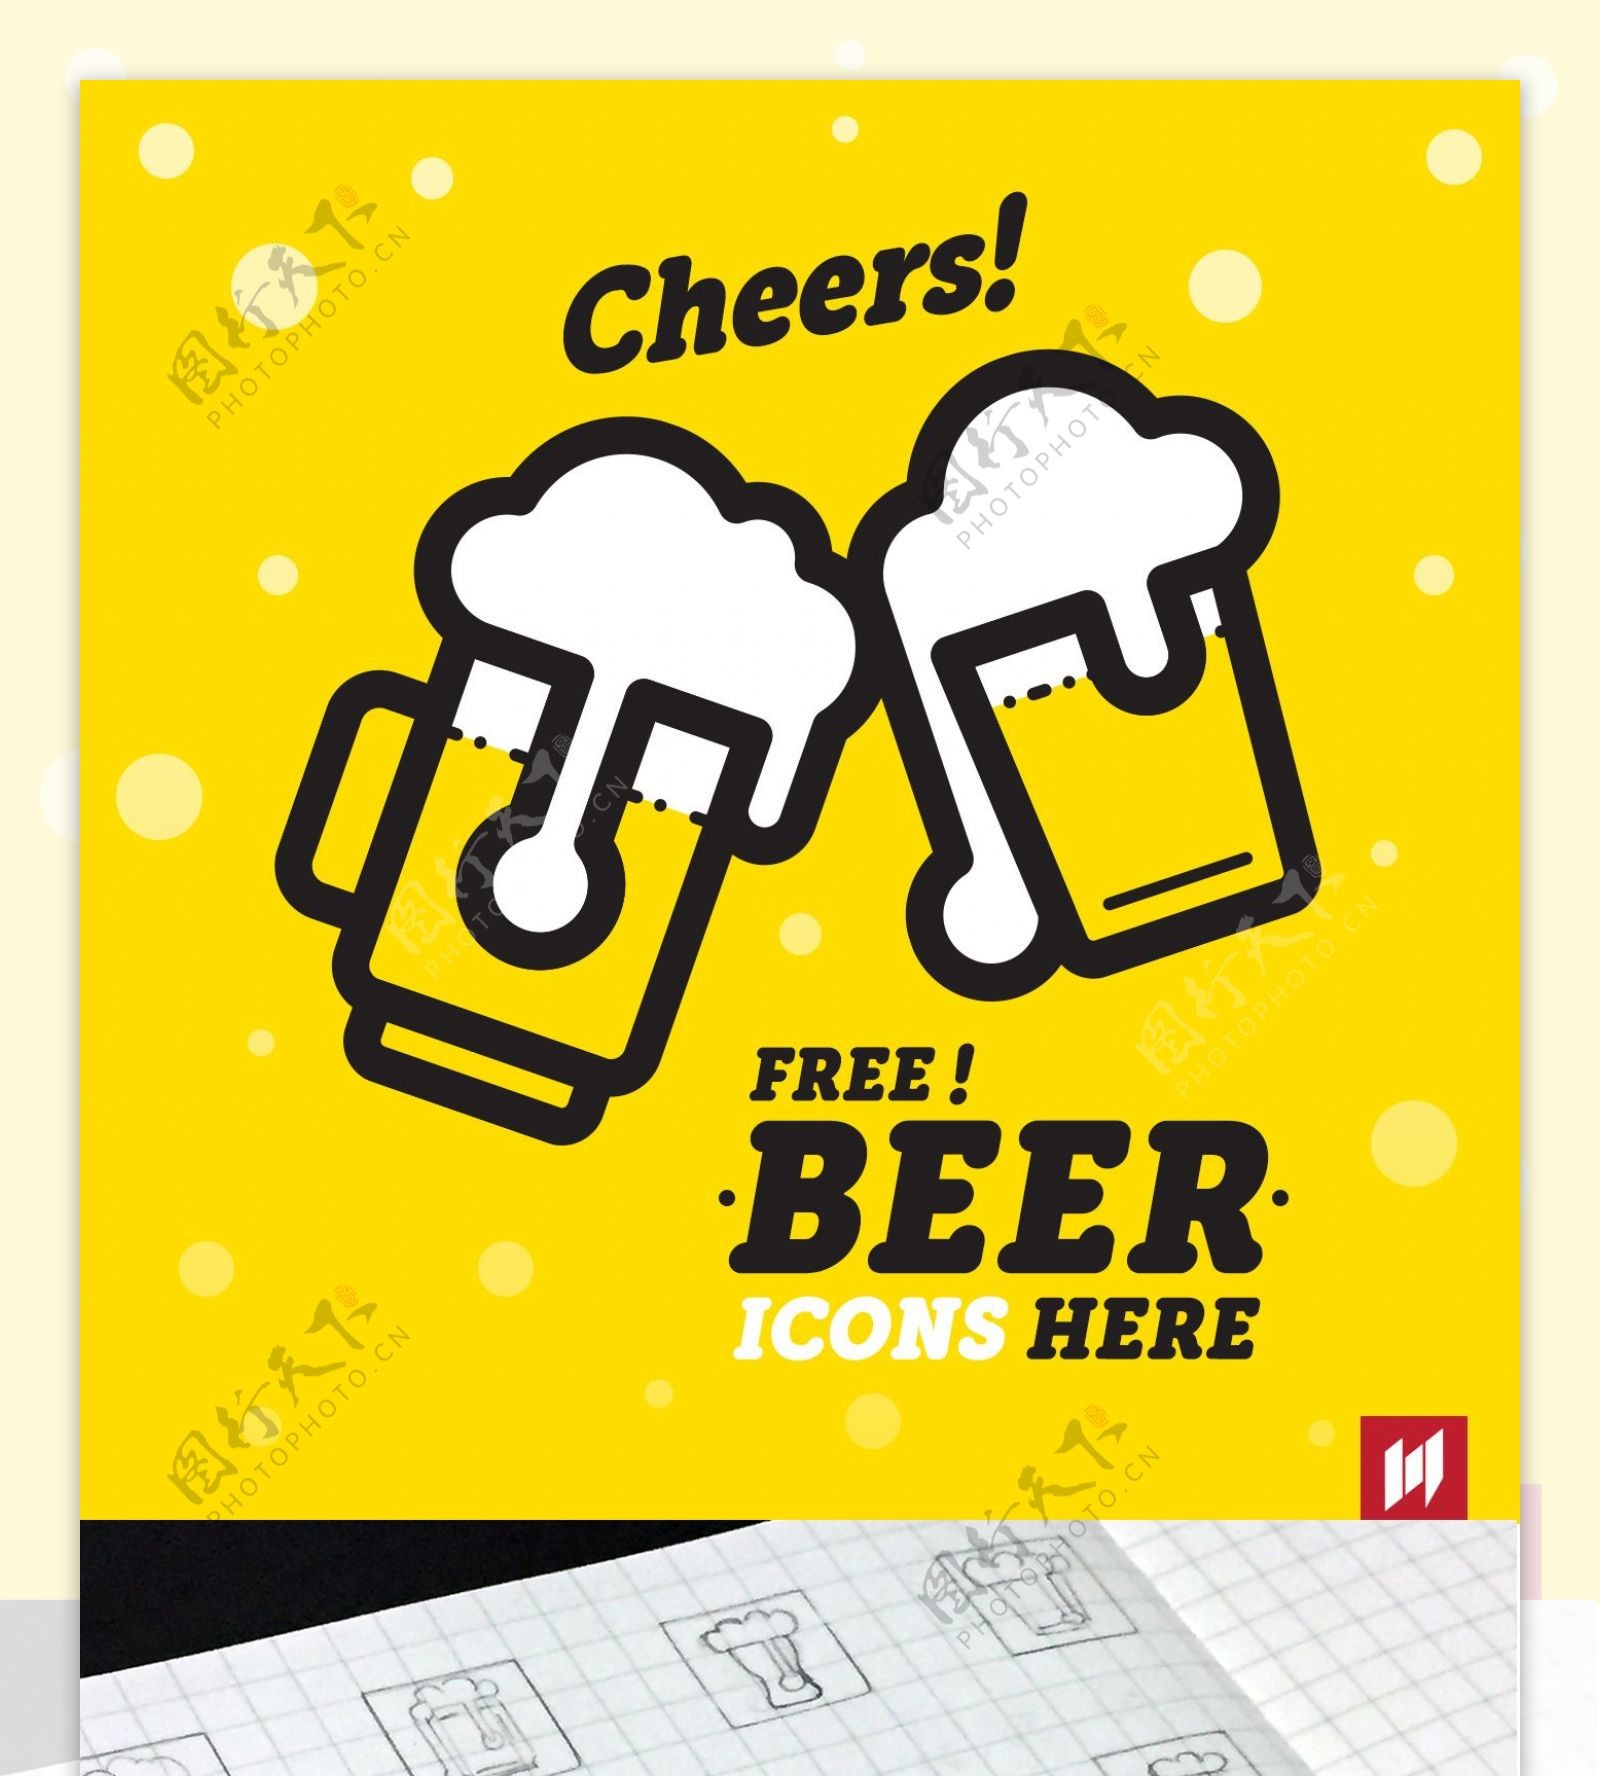 24免费啤酒的插图在矢量格式